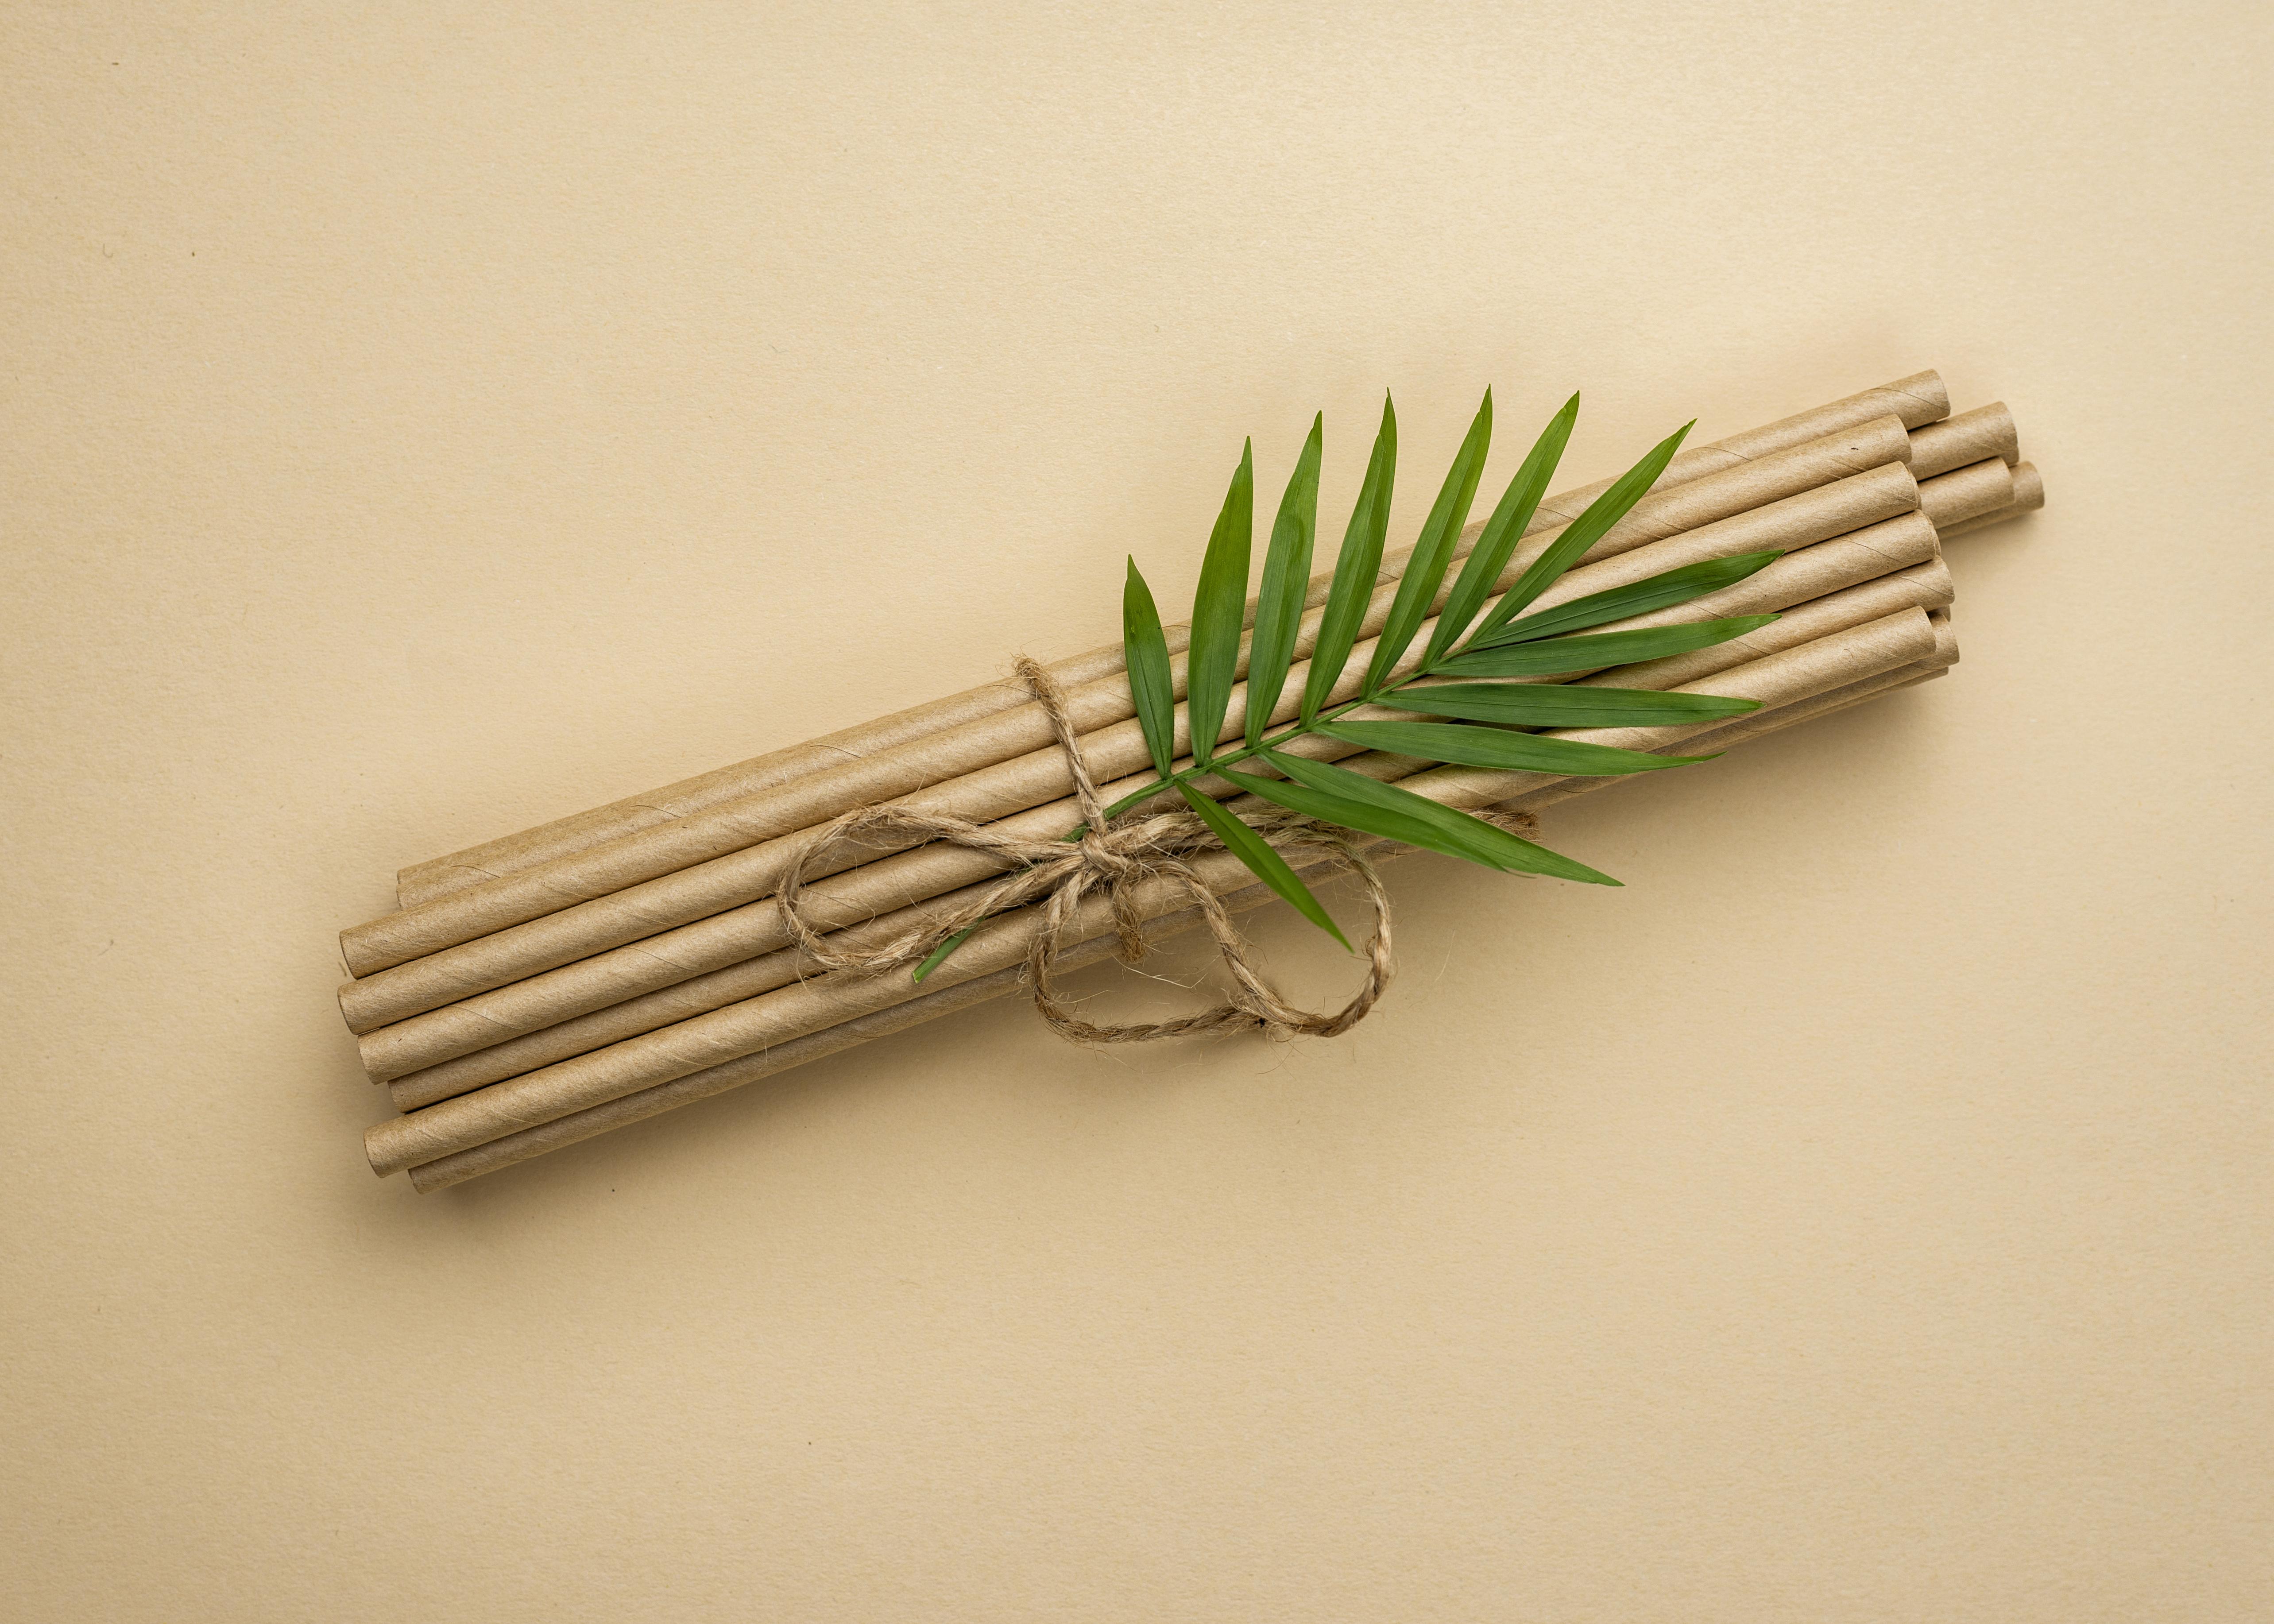 황토색 바닥 위에 대나무 대 한묶음 위에 대나무 잎을 한줄기 놓고 끈으로 묶은 후에 위에서 찍은 사진